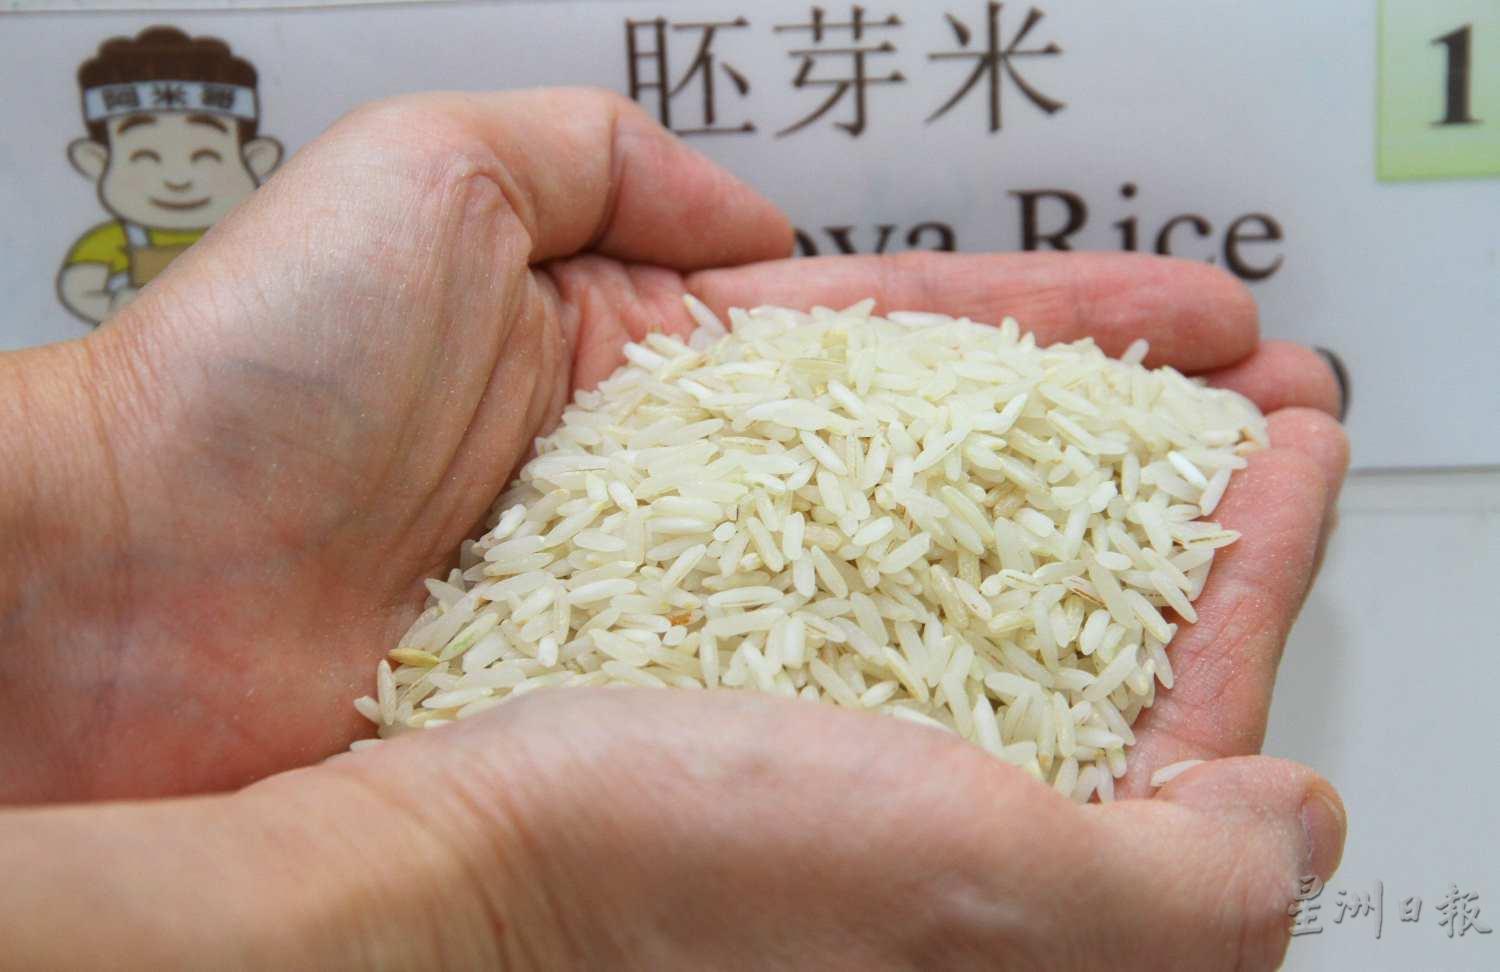 胚芽米：脱去稻壳，去除米糠，就成了味道和口感接近白米但营养成分更高的胚芽米，煮饭时只需浸泡15分钟左右，米和水的比例是1比1.2。